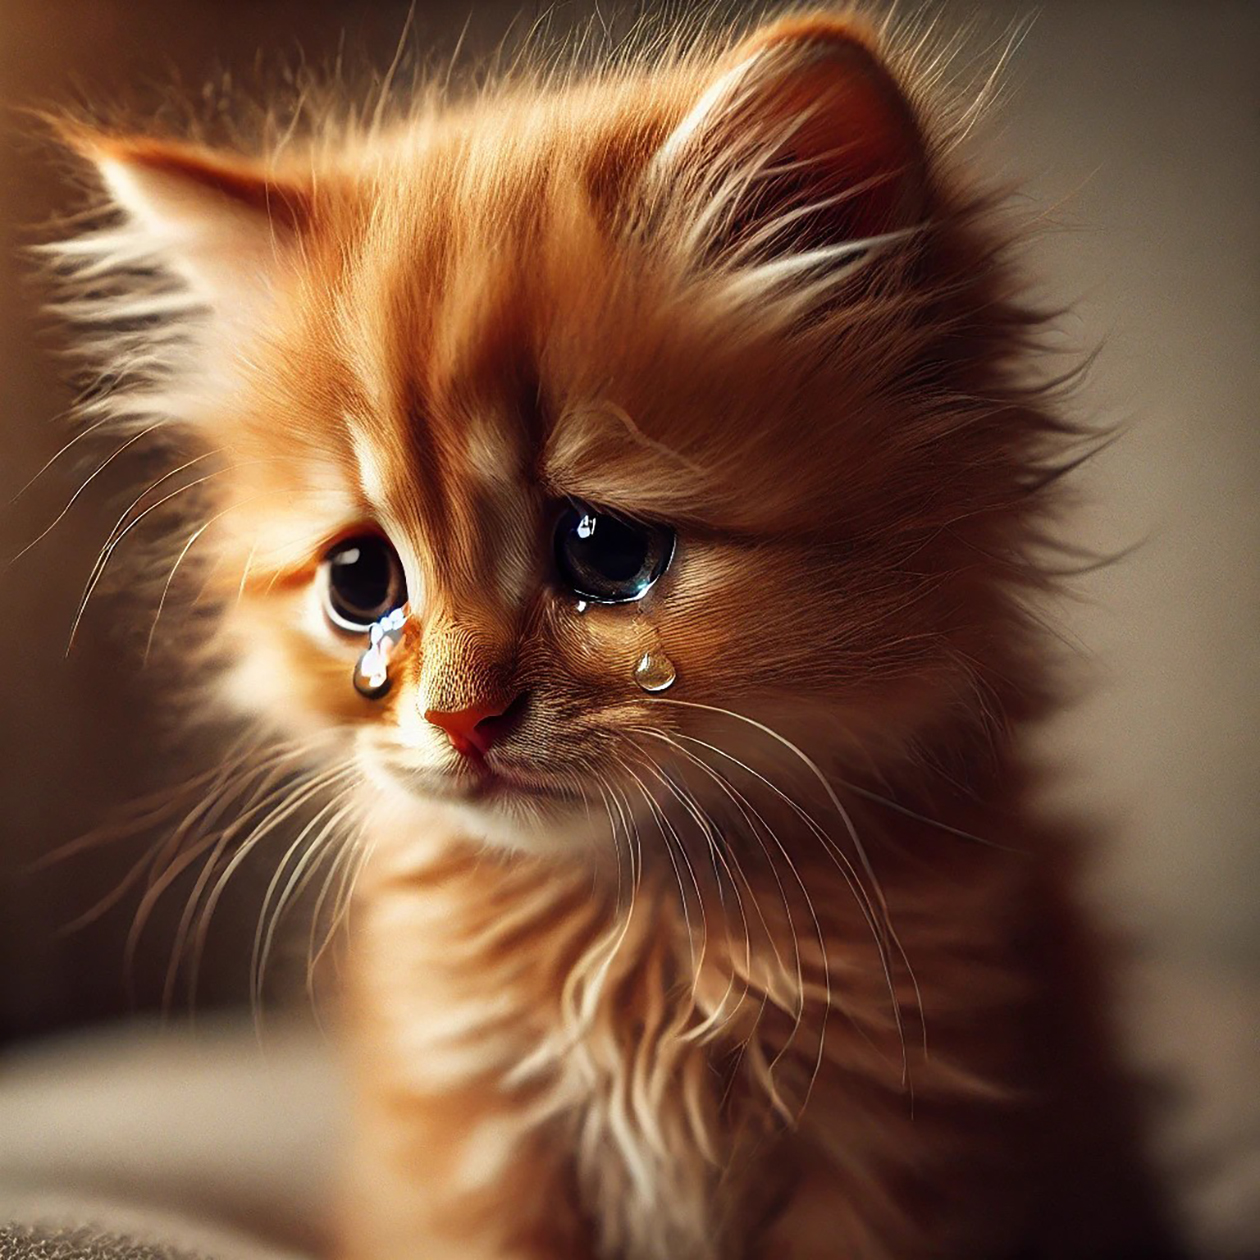 Сгенерированная в Dall⁠-⁠E 3 картинка по запросу «Грустный рыжий котенок плачет»